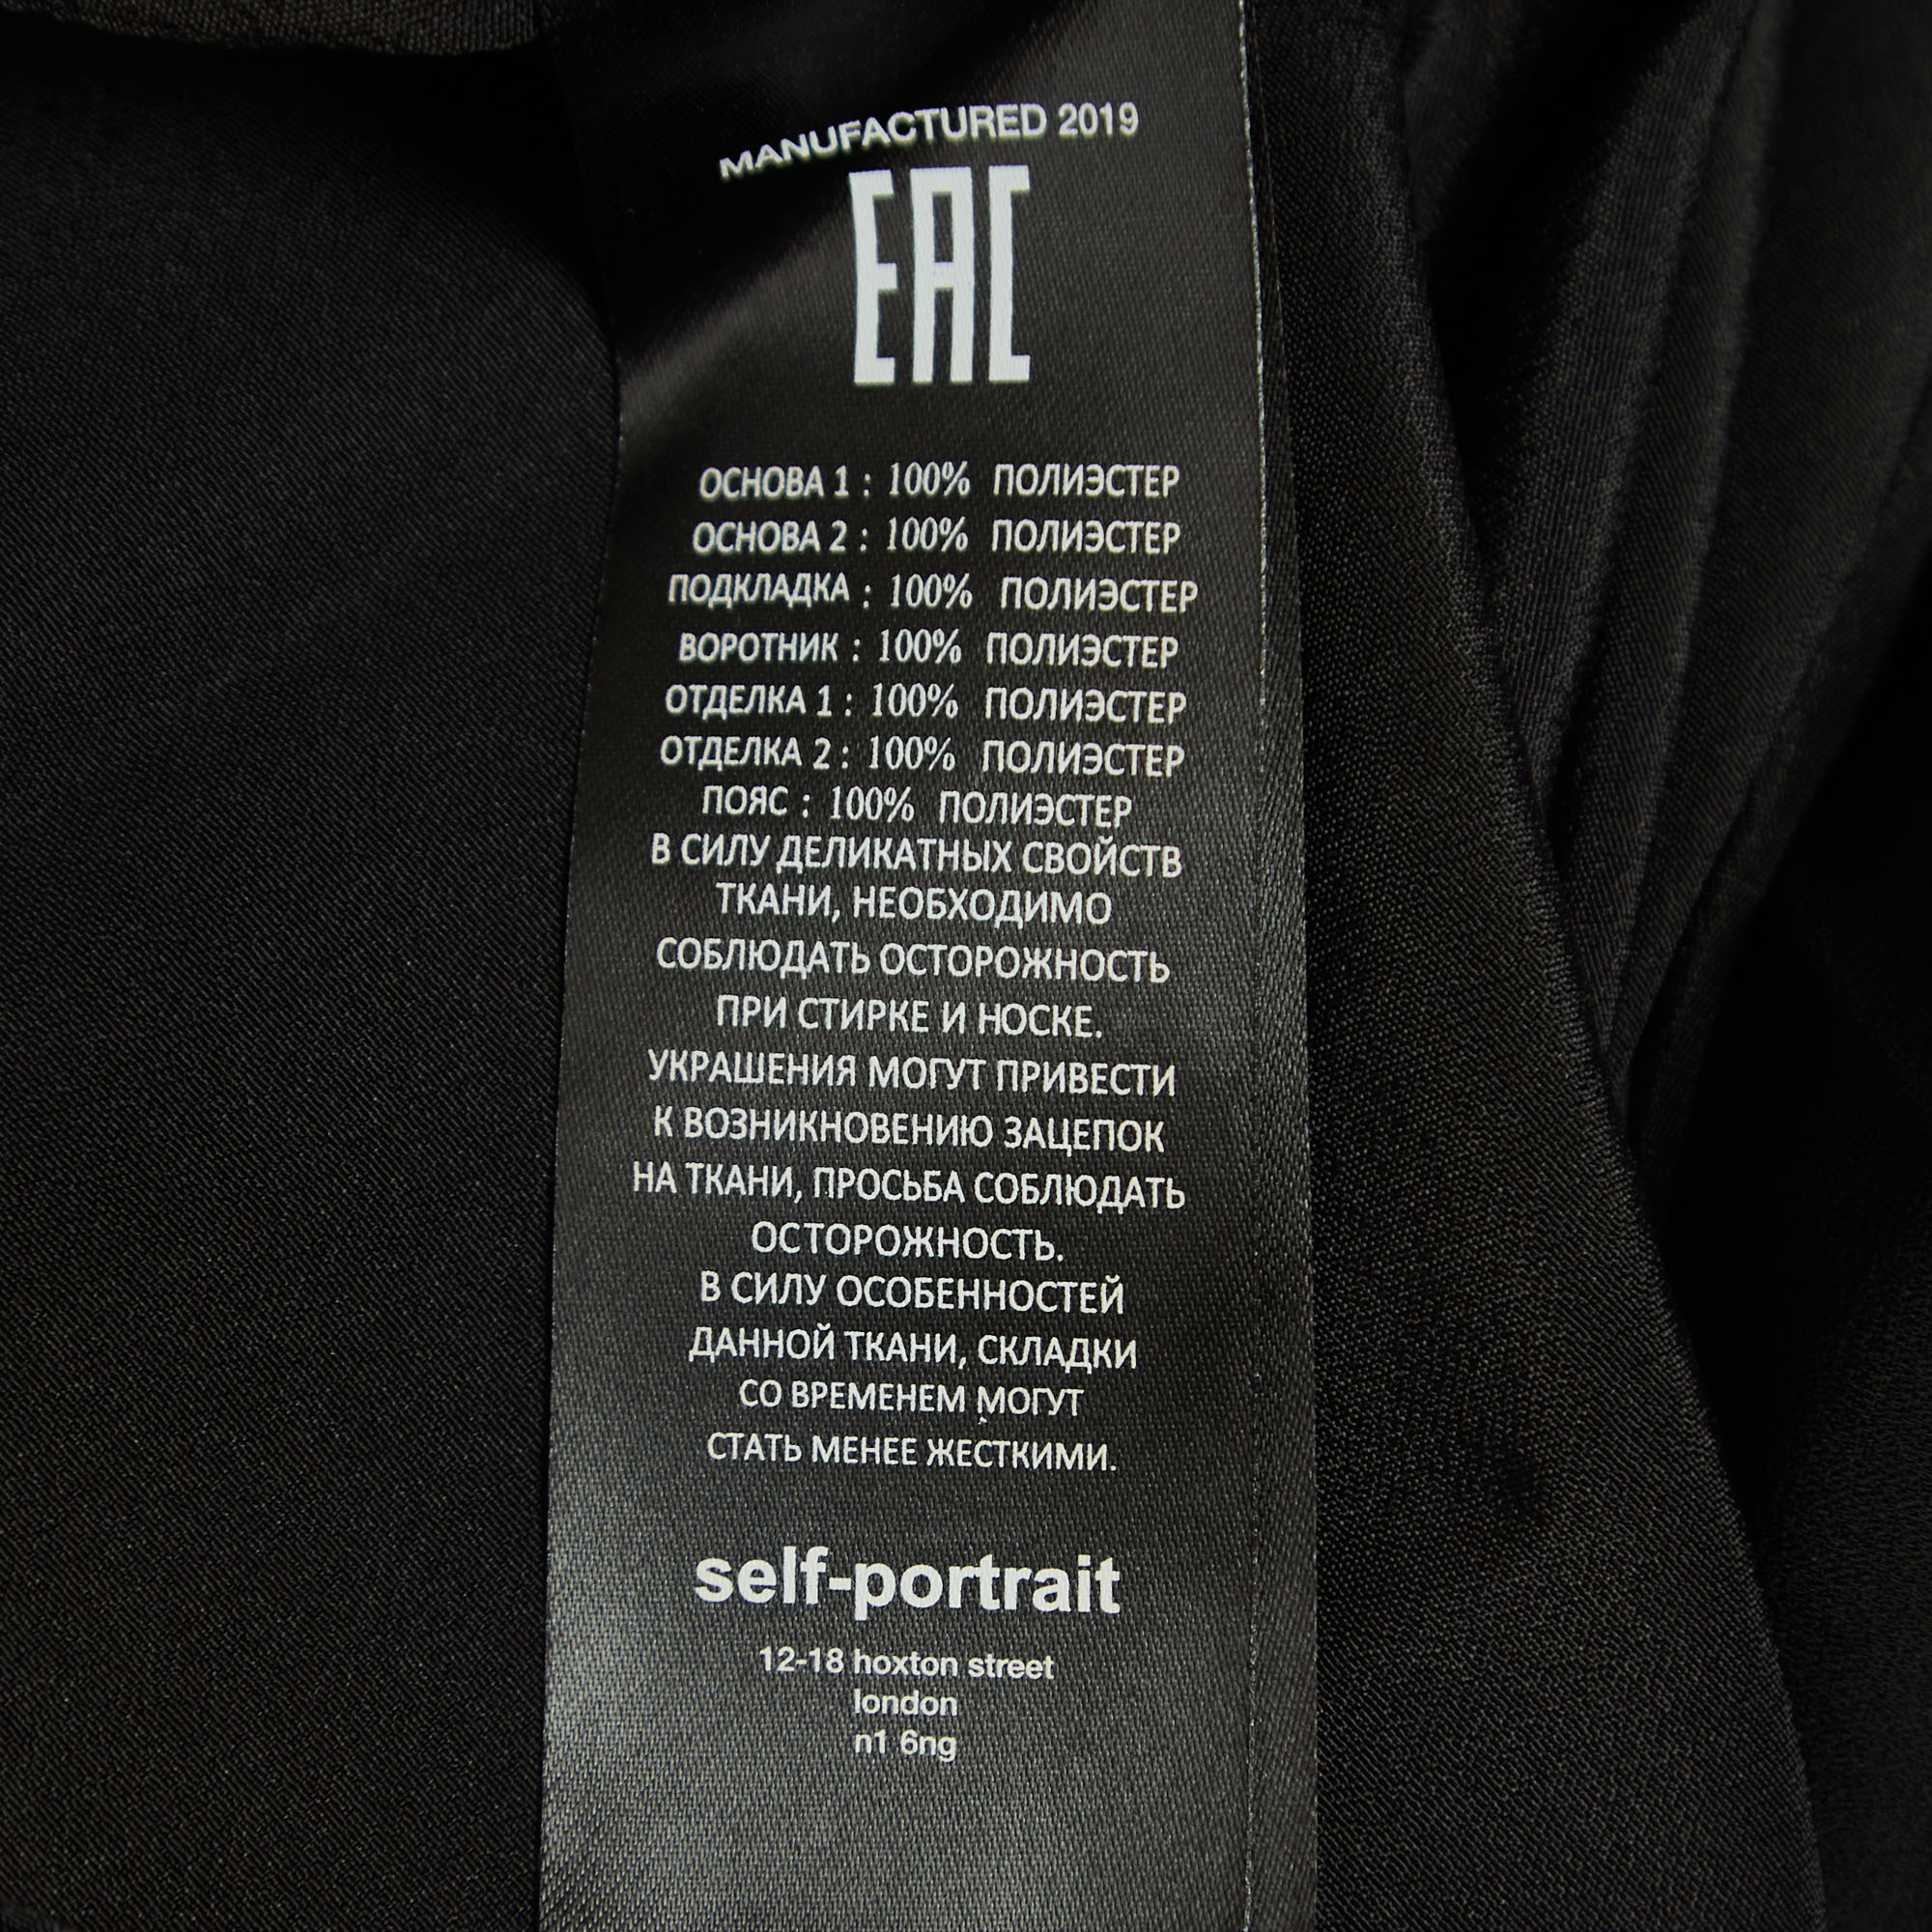 Self-Portrait Black Geometric Pattern Lace Pleated Midi Dress S